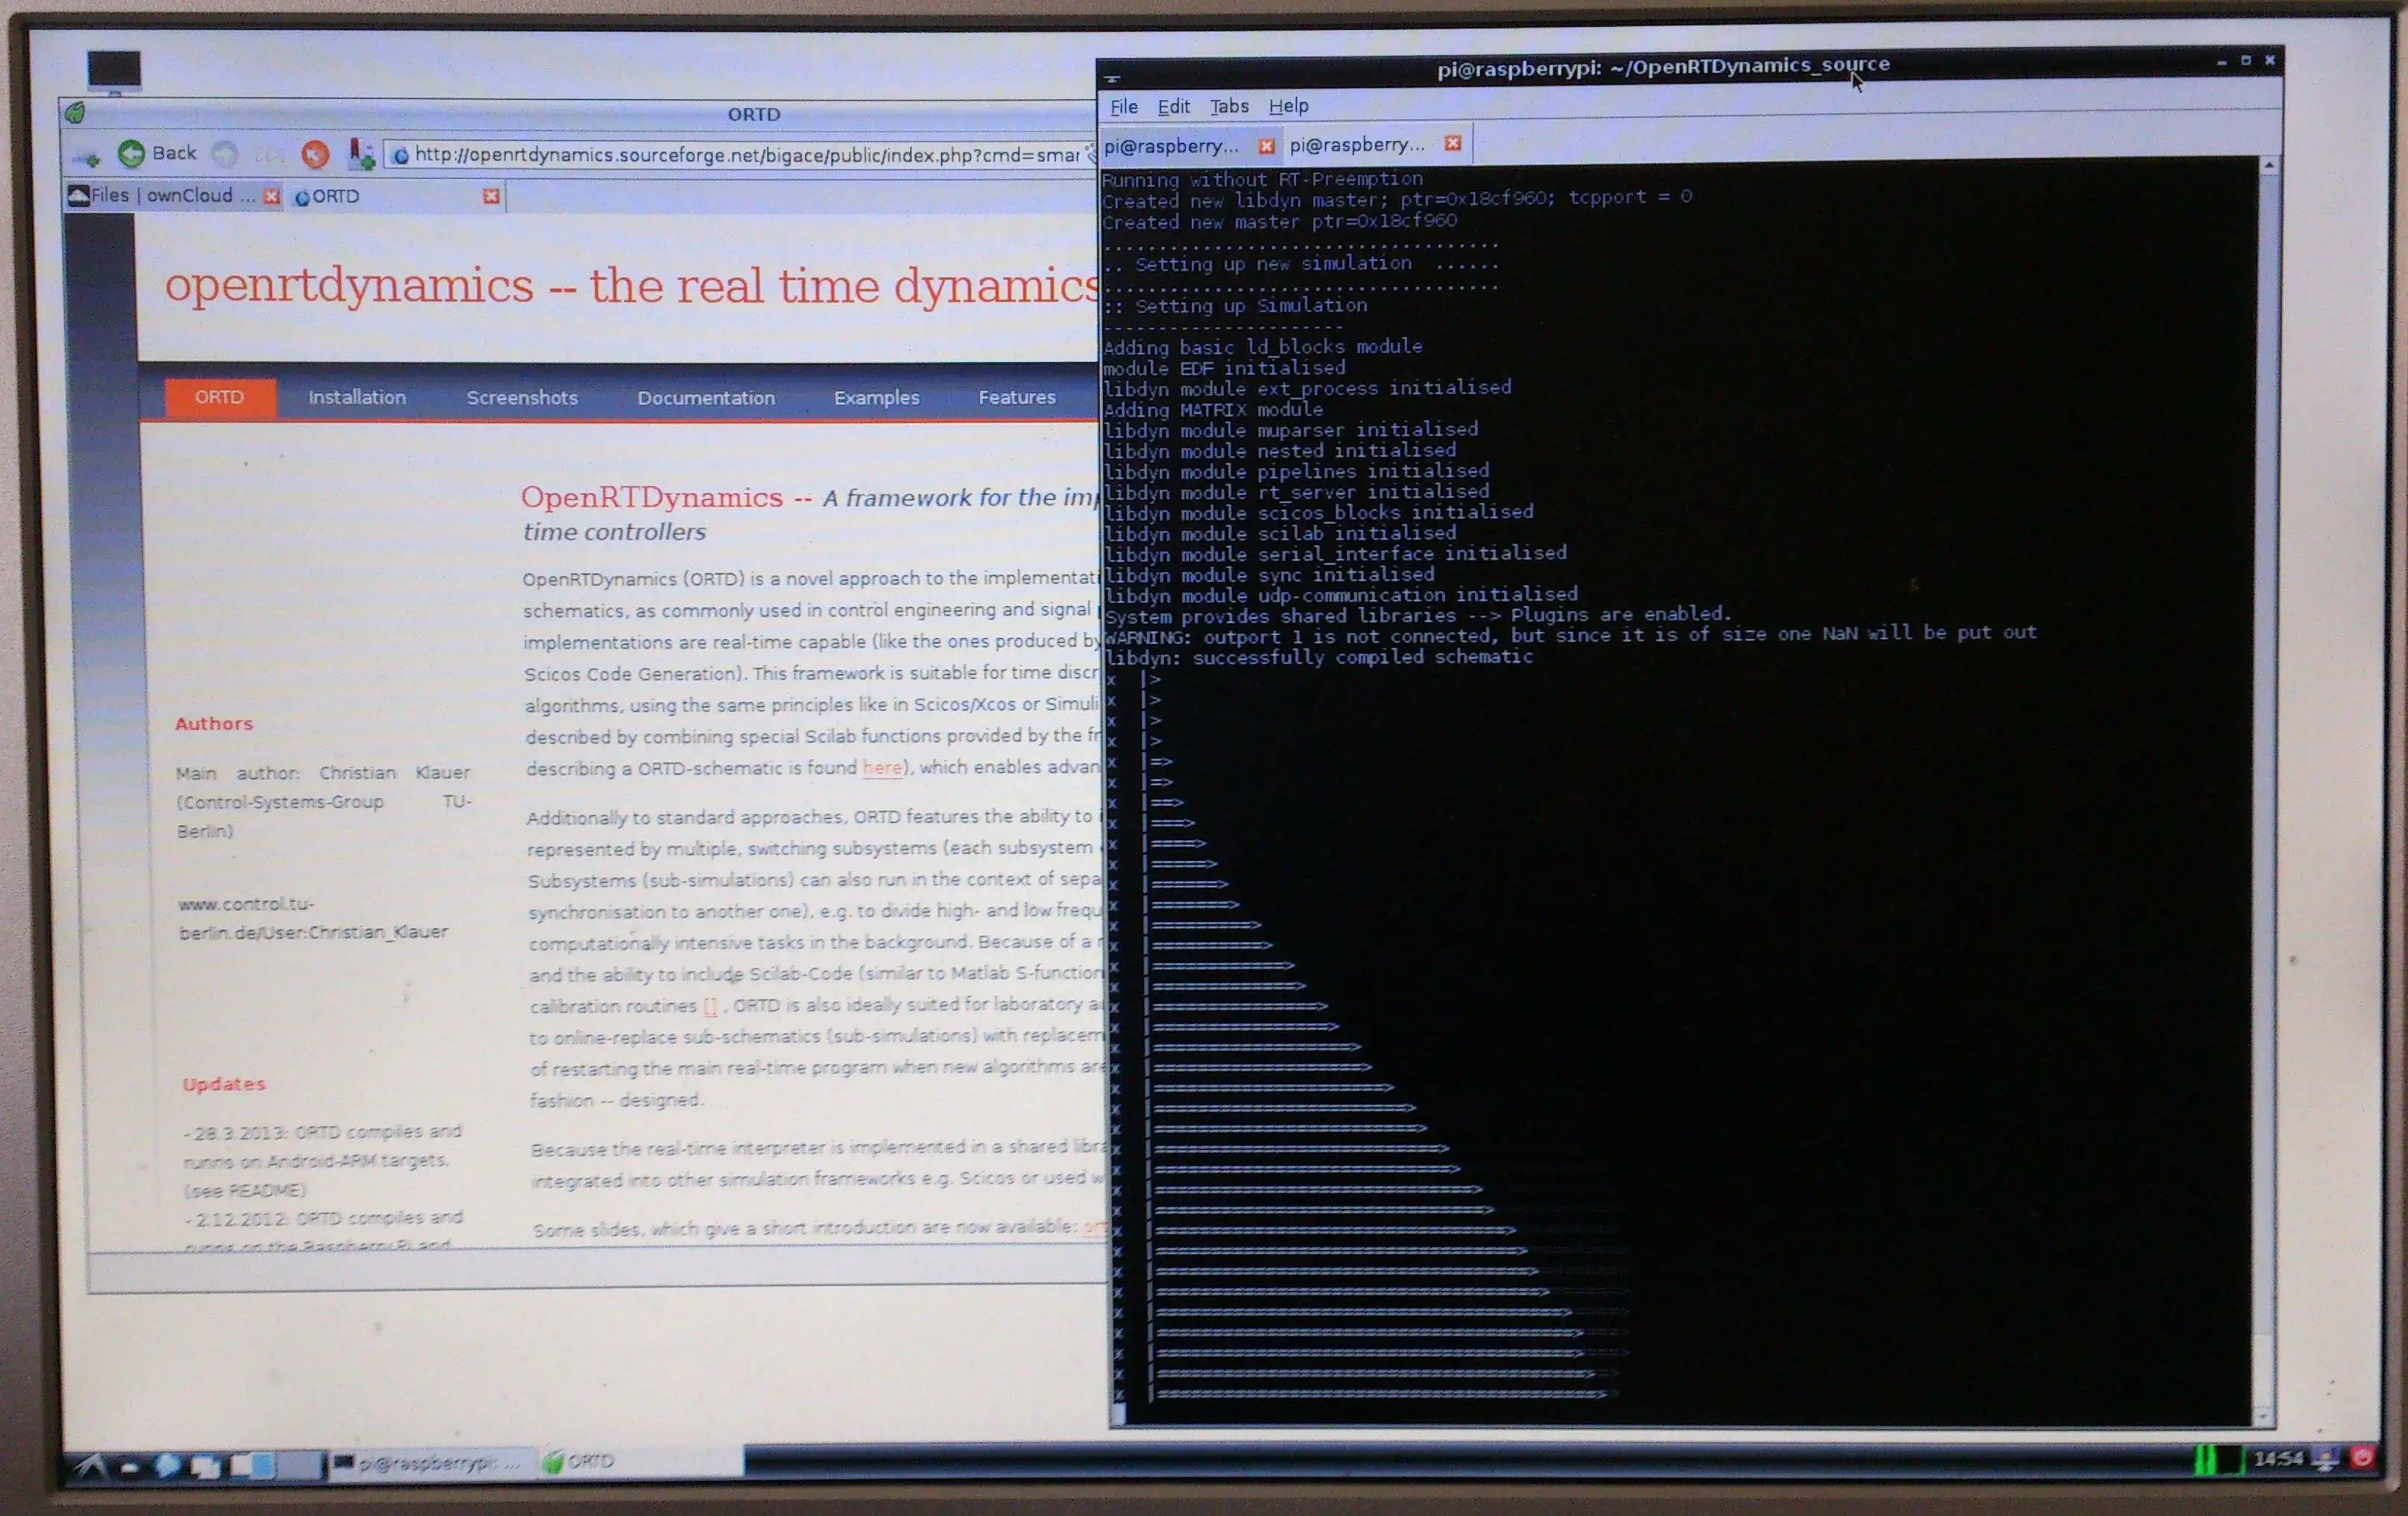 הורד את כלי האינטרנט או את אפליקציית האינטרנט OpenRTDynamics להפעלה ב-Linux באופן מקוון